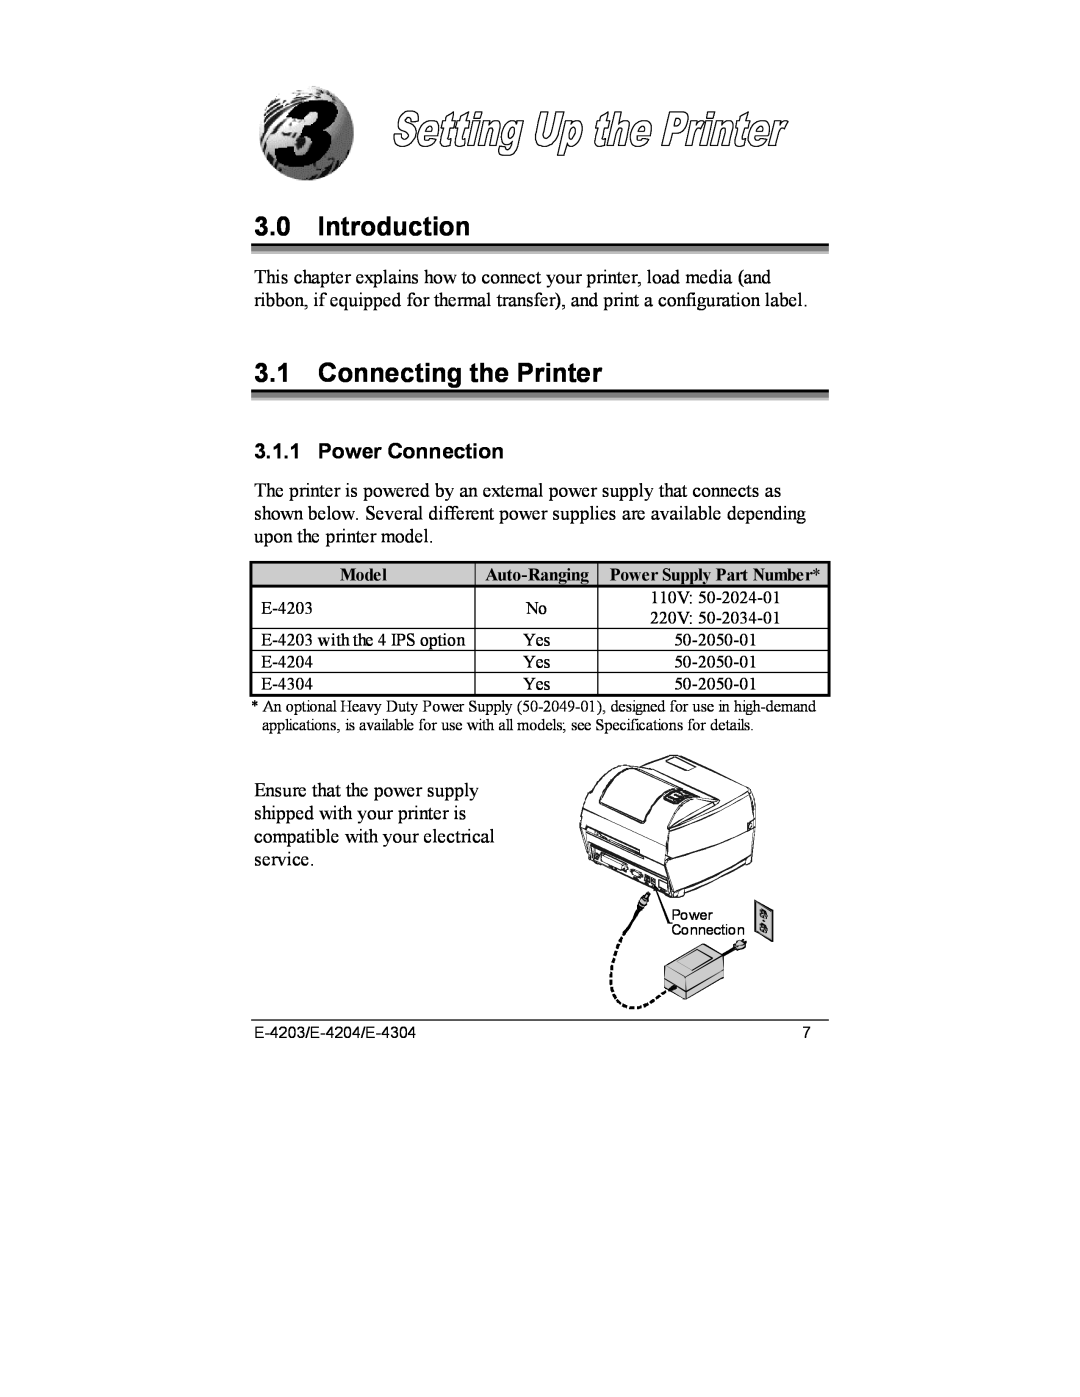 Datamax E-4304e, E-4203, E-4204 manual Introduction, Connecting the Printer, Power Connection 